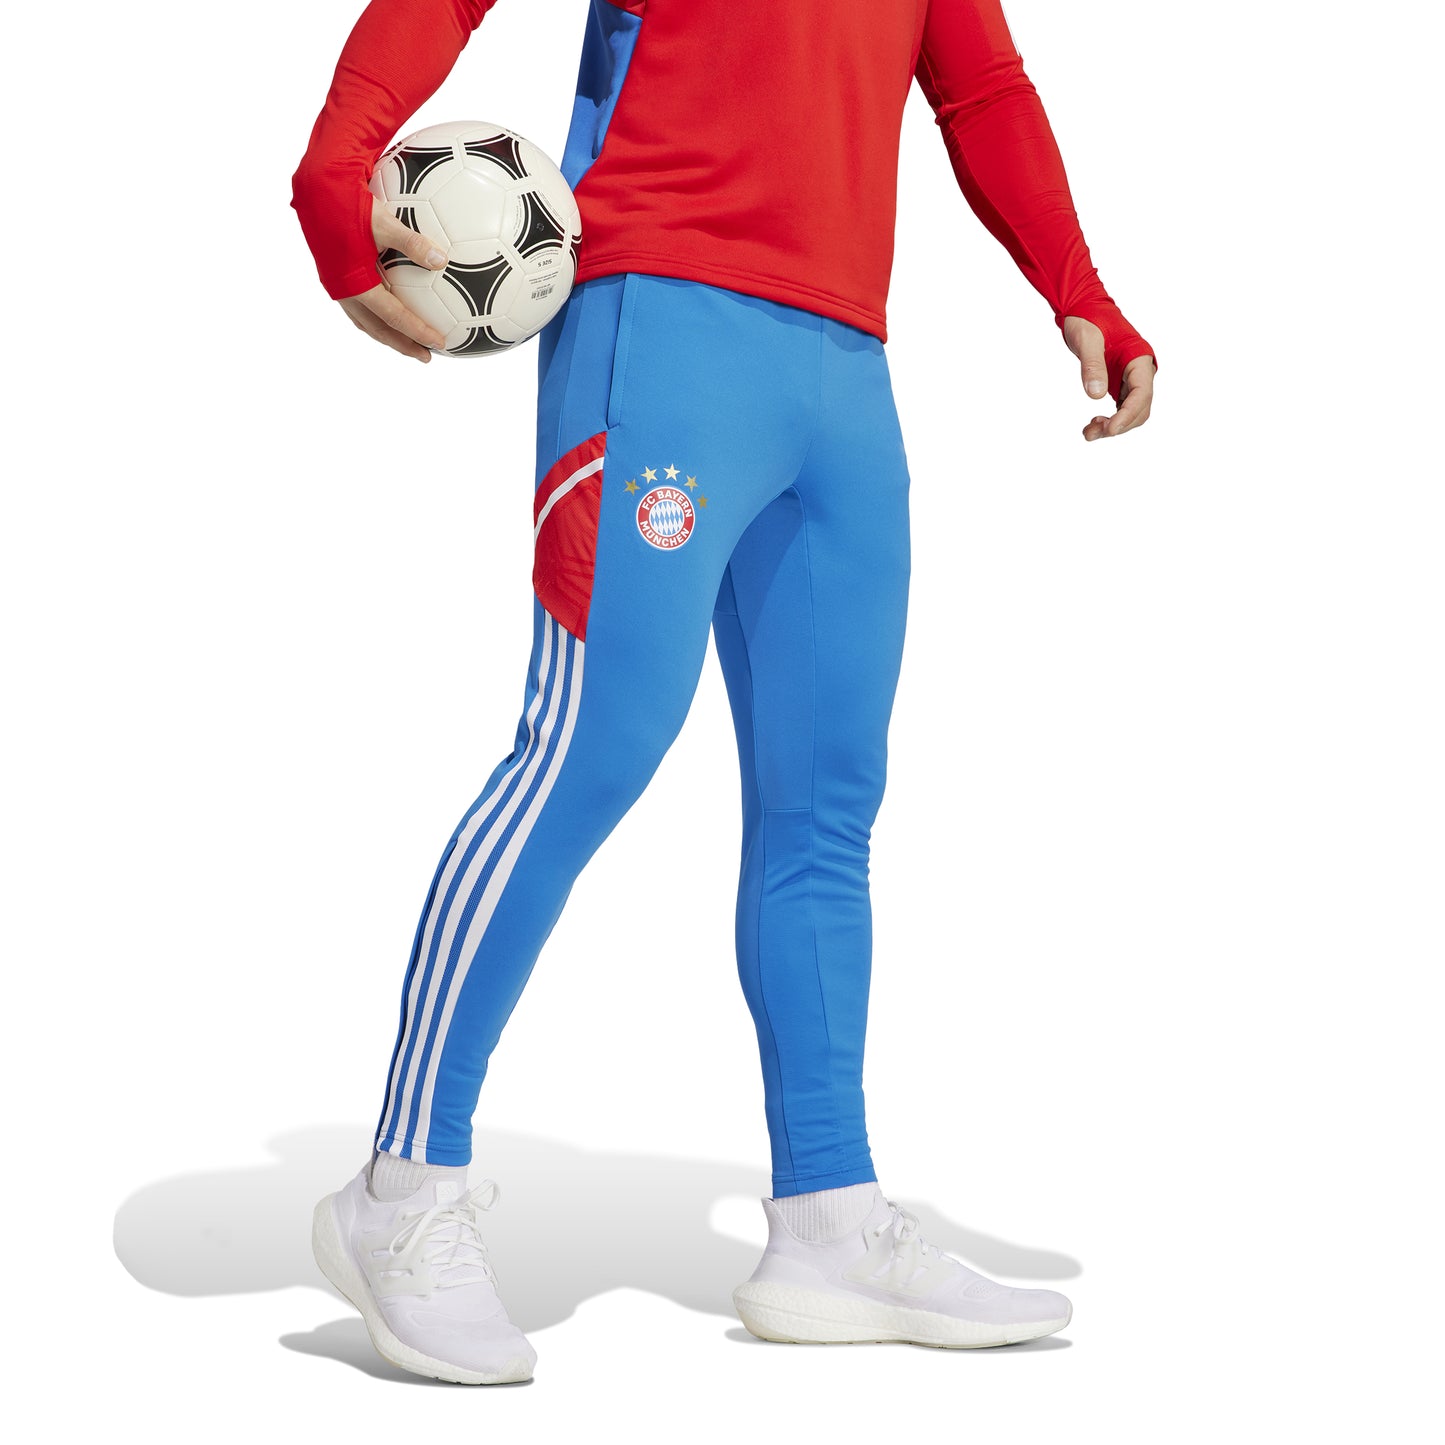 Adidas Bayern Munich Training Pants